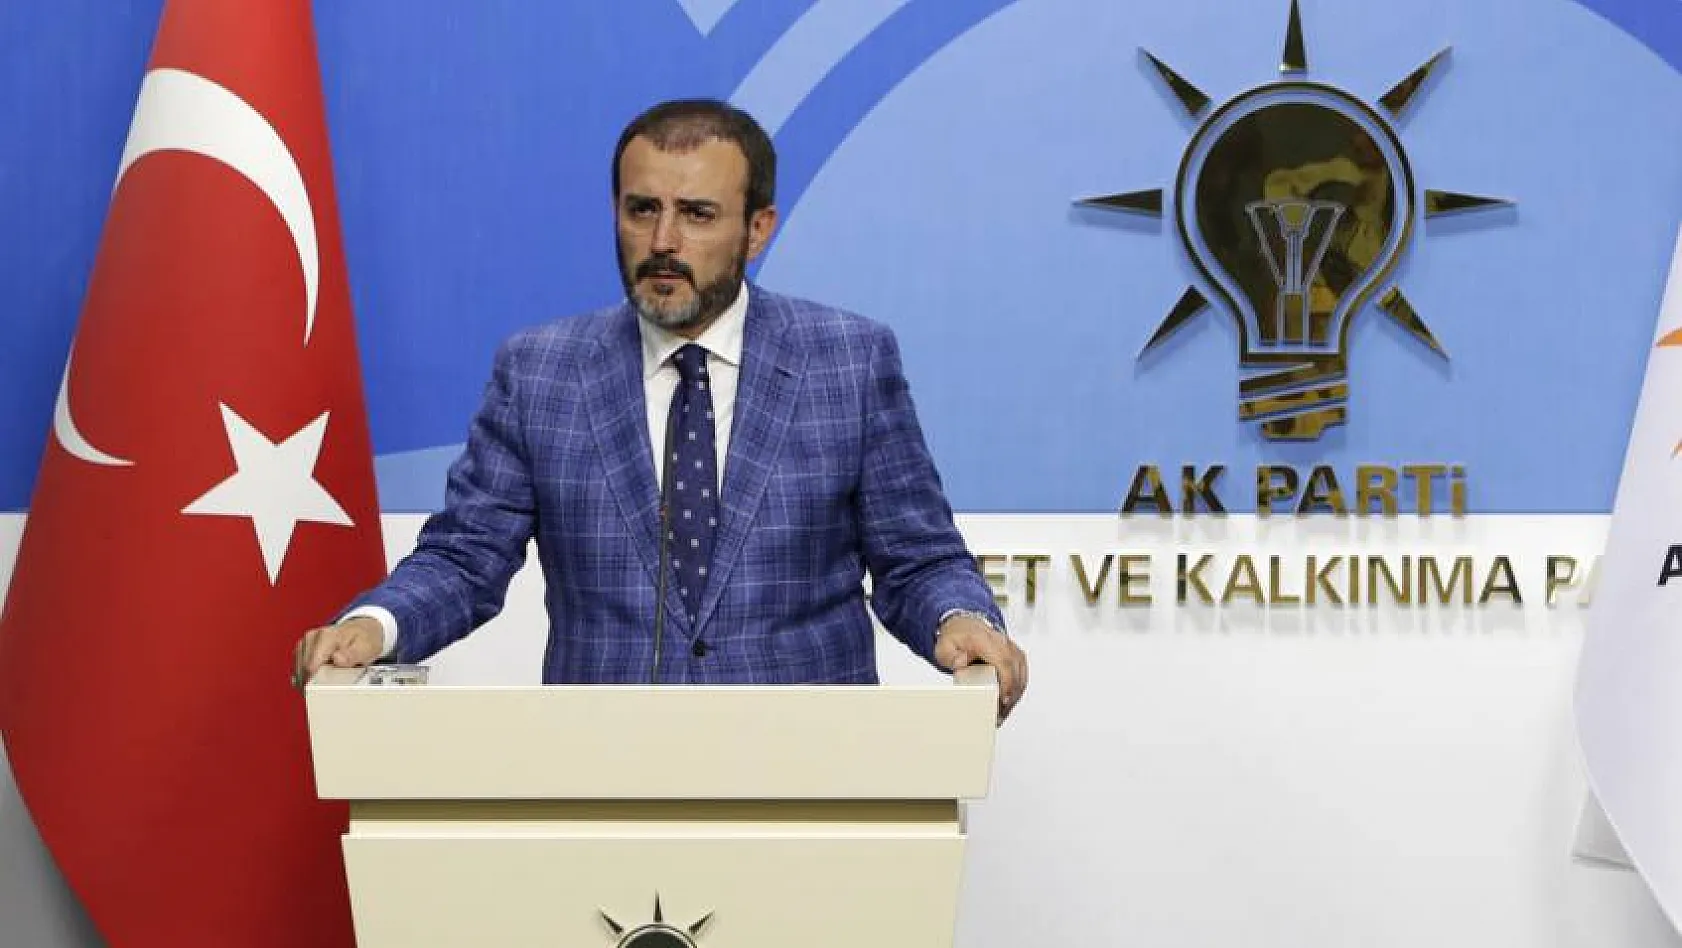 Danıştayın yaz saati kararına AK Partiden ilk yanıt